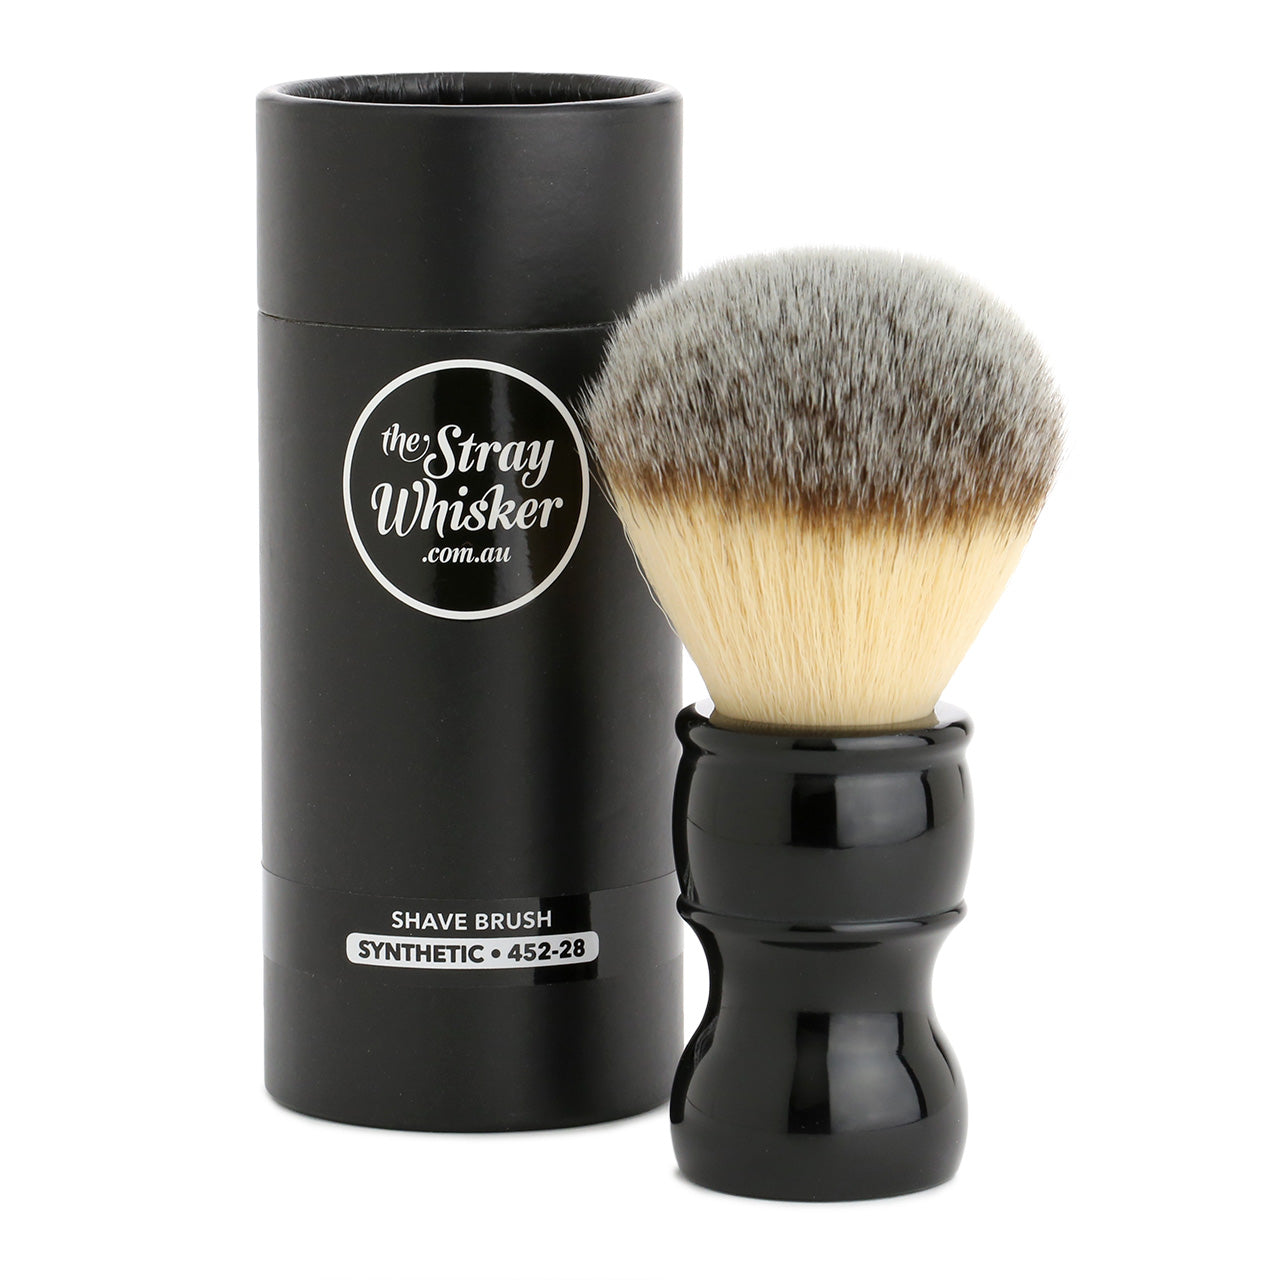 The Stray Whisker Synthetic Shaving Brush - 28mm